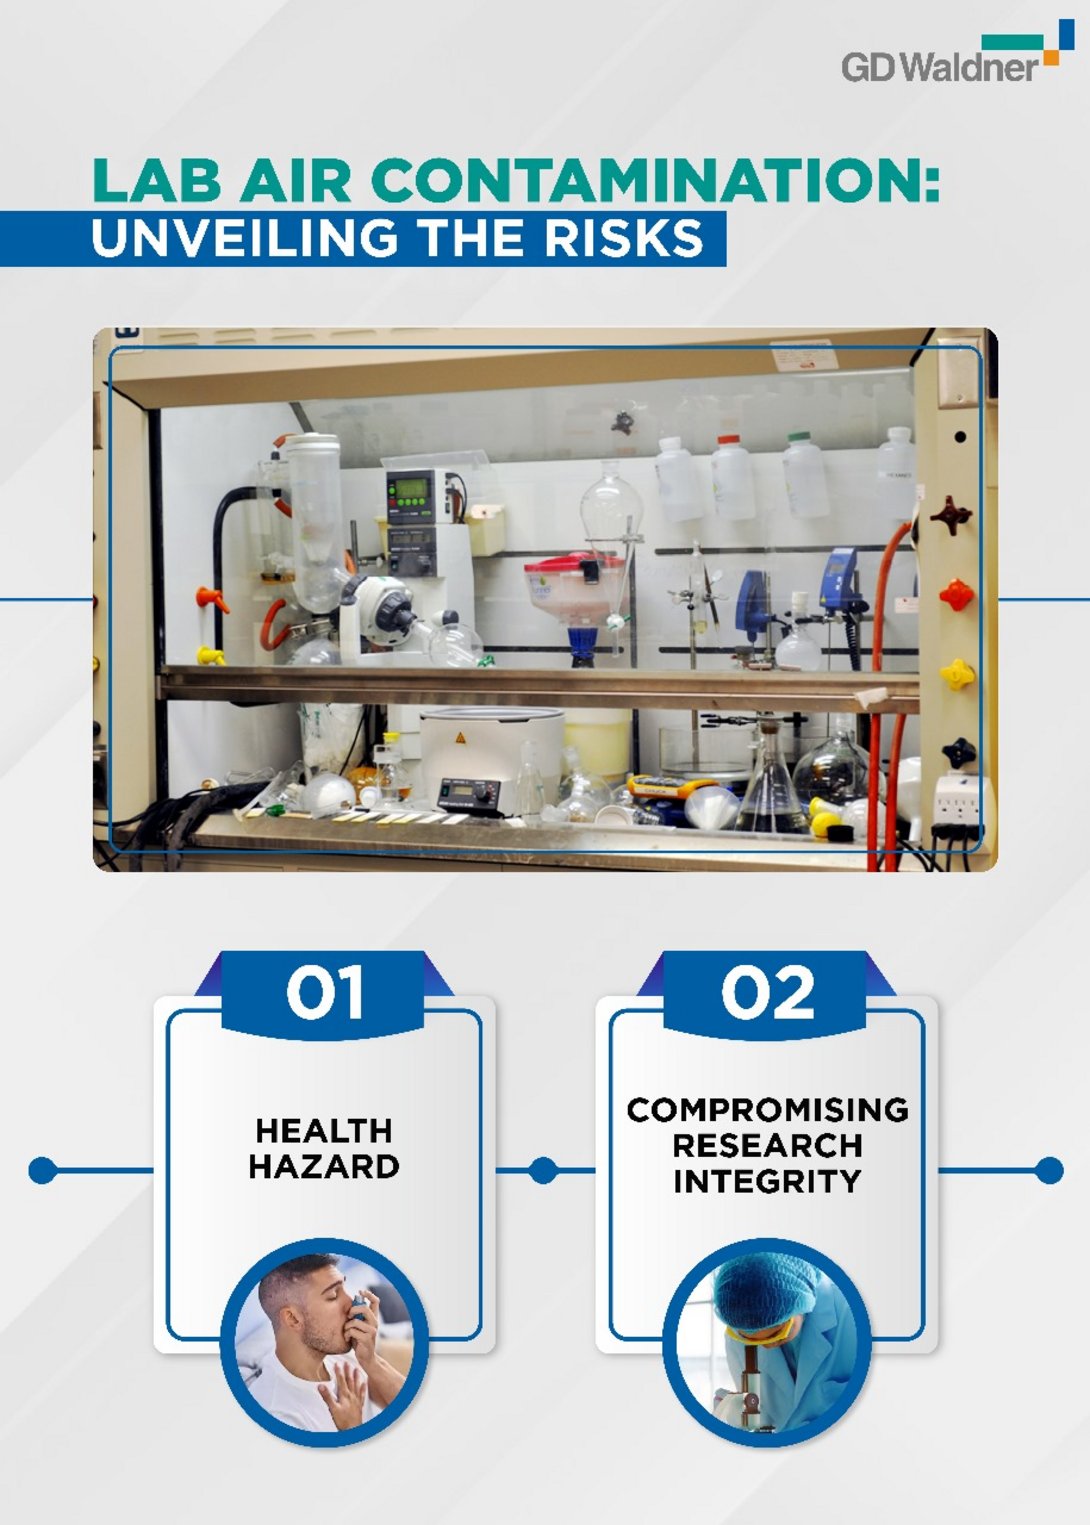 Bild: Lab Air Contamination: Unveiling the risks